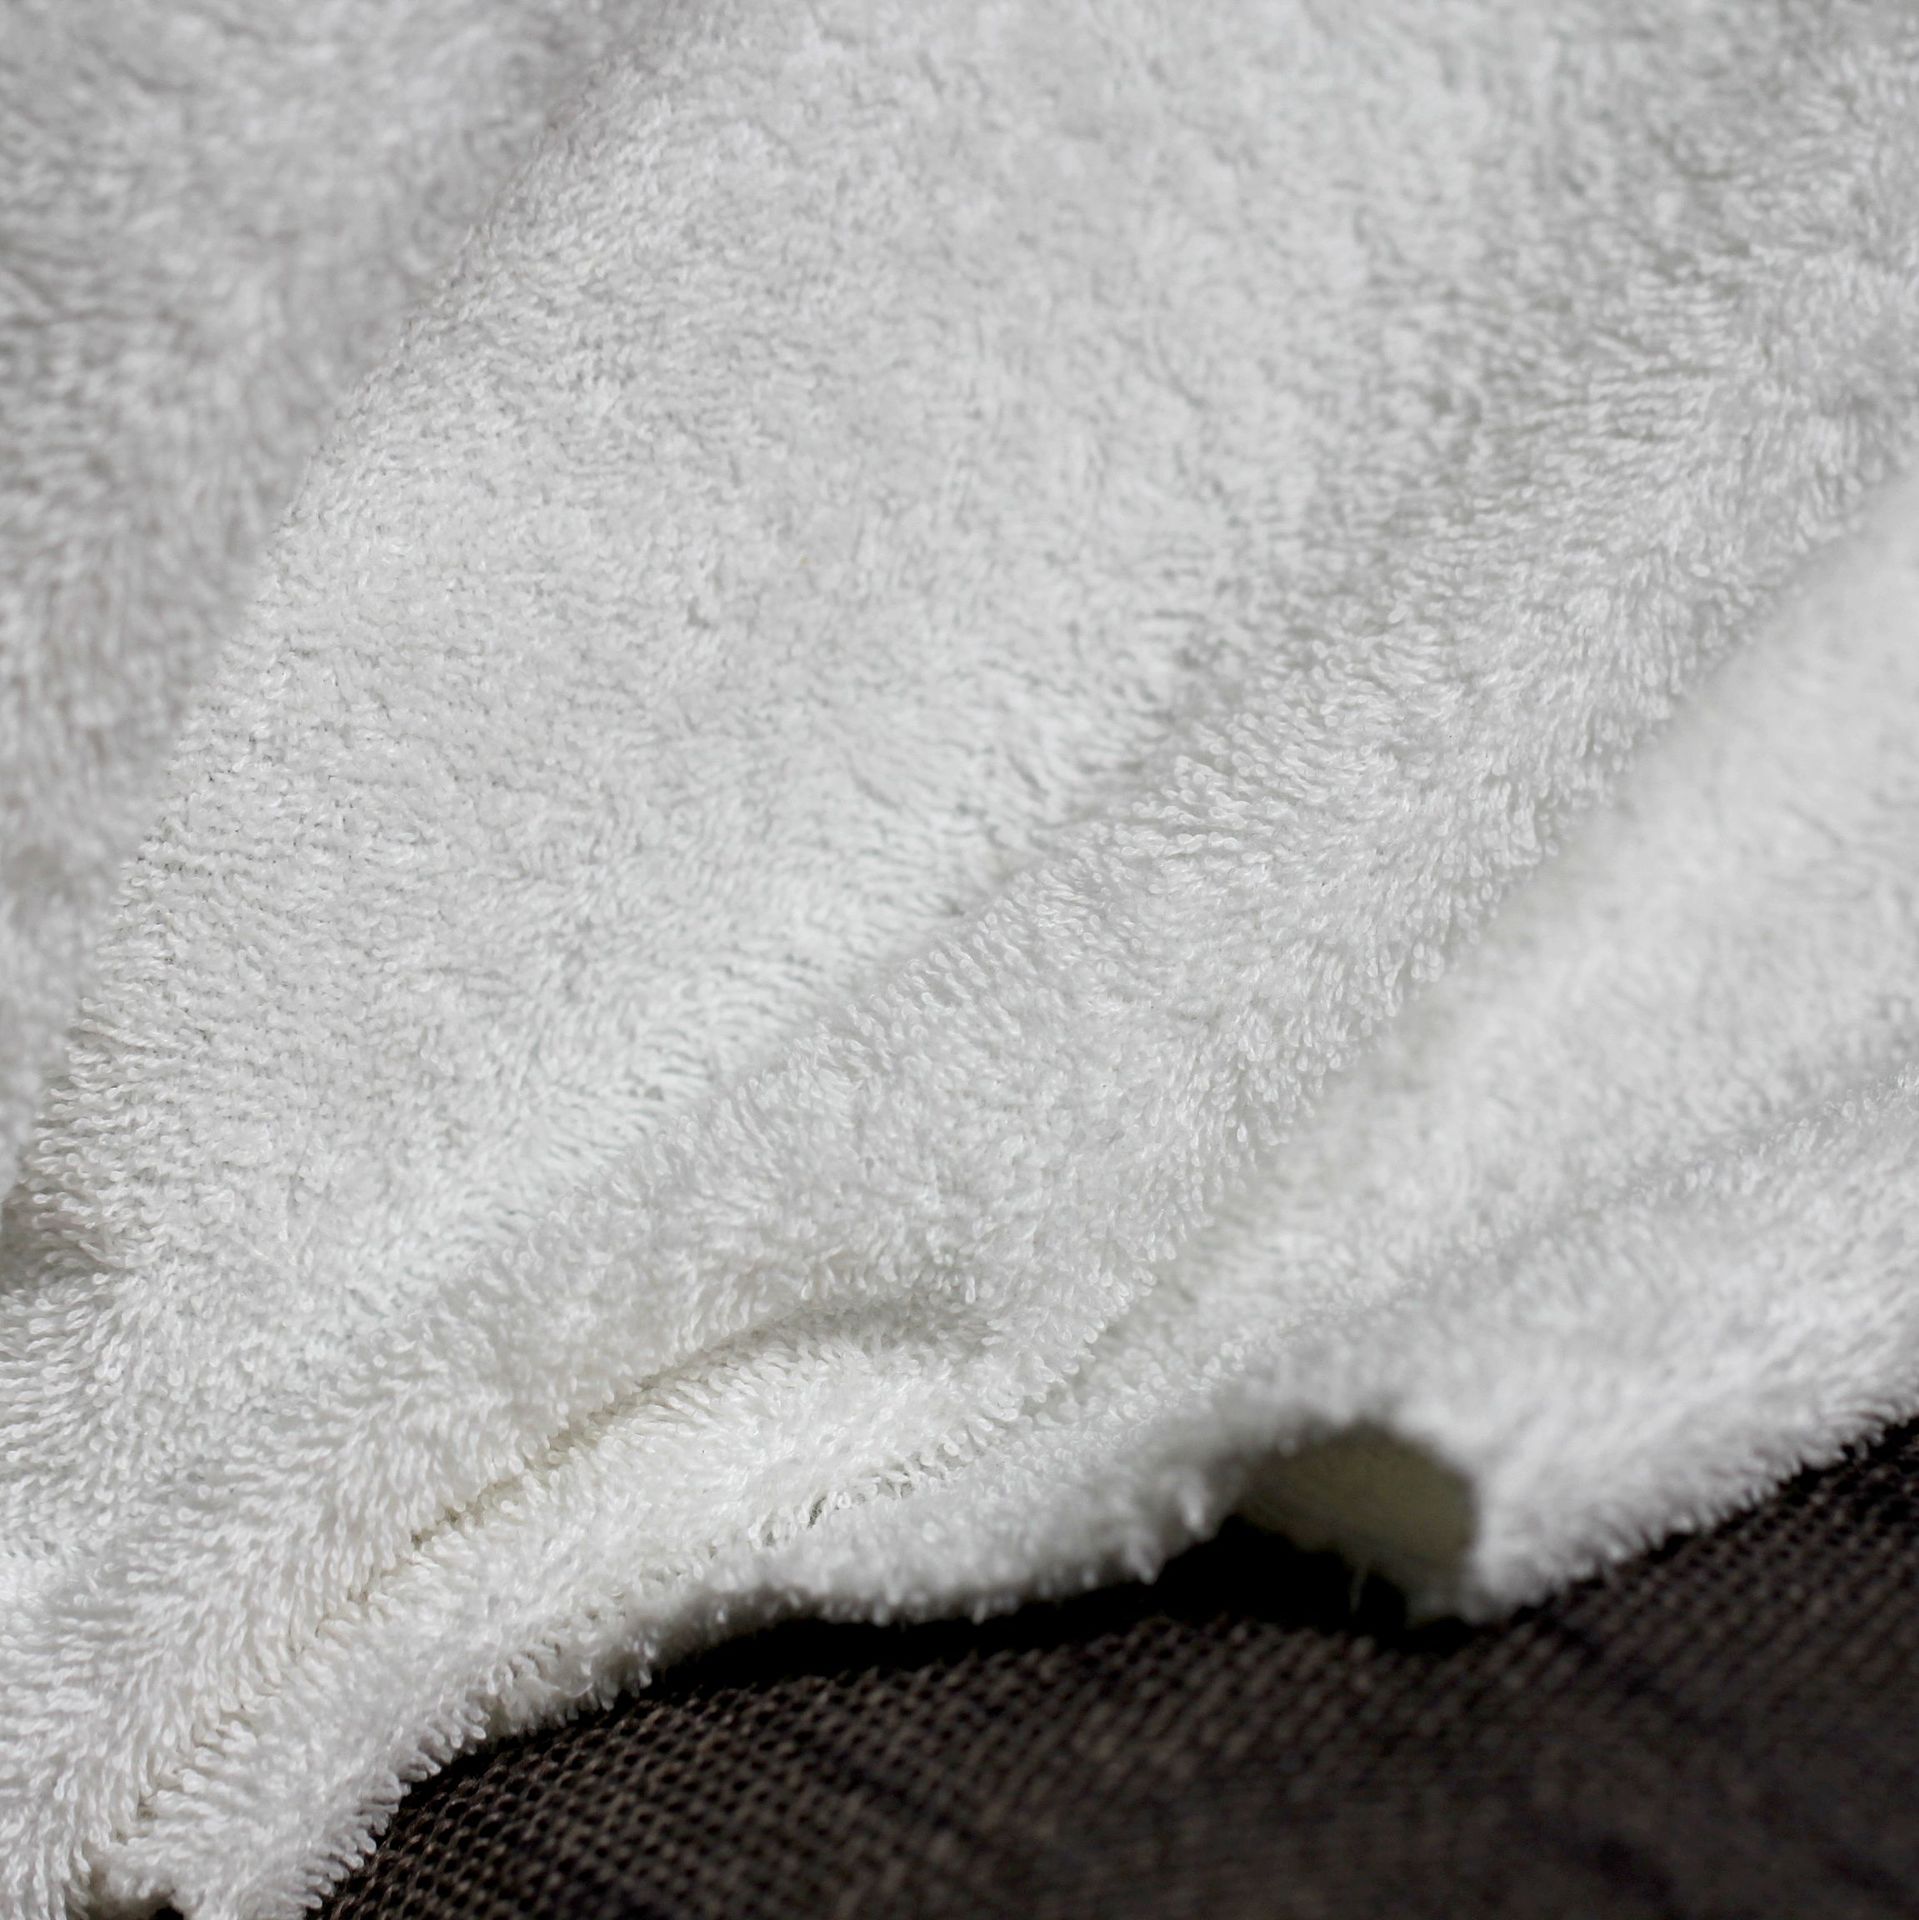 張槎工廠供應 白色嬰兒有機棉雙麵毛巾佈  340g